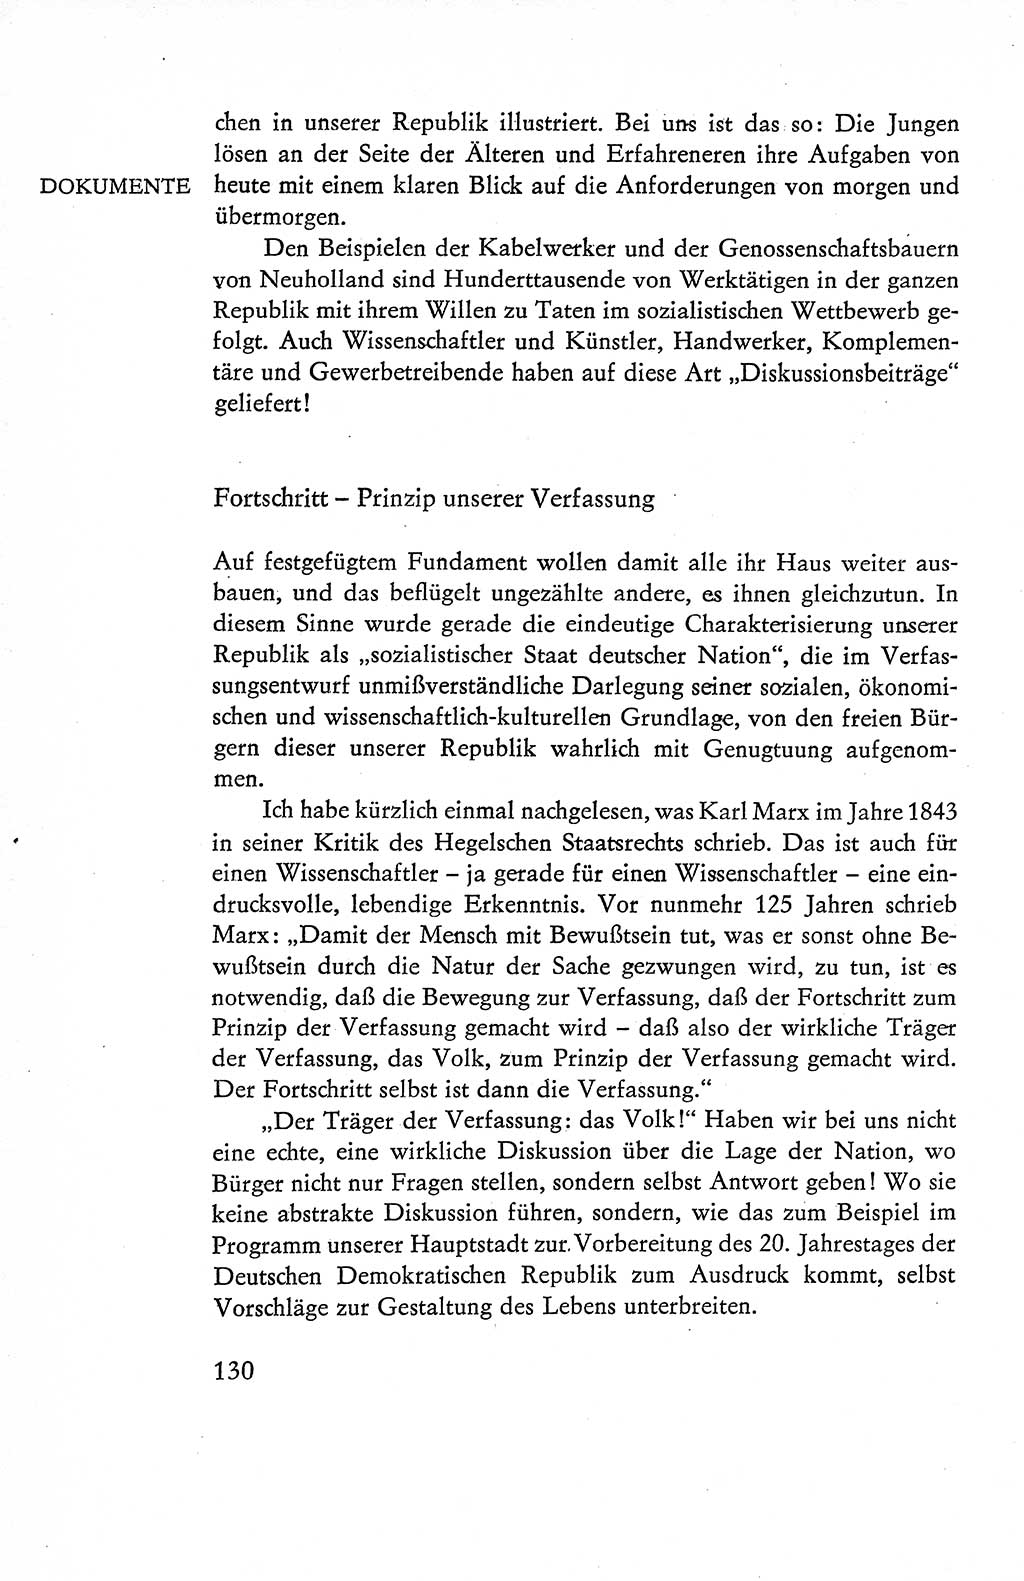 Verfassung der Deutschen Demokratischen Republik (DDR), Dokumente, Kommentar 1969, Band 1, Seite 130 (Verf. DDR Dok. Komm. 1969, Bd. 1, S. 130)